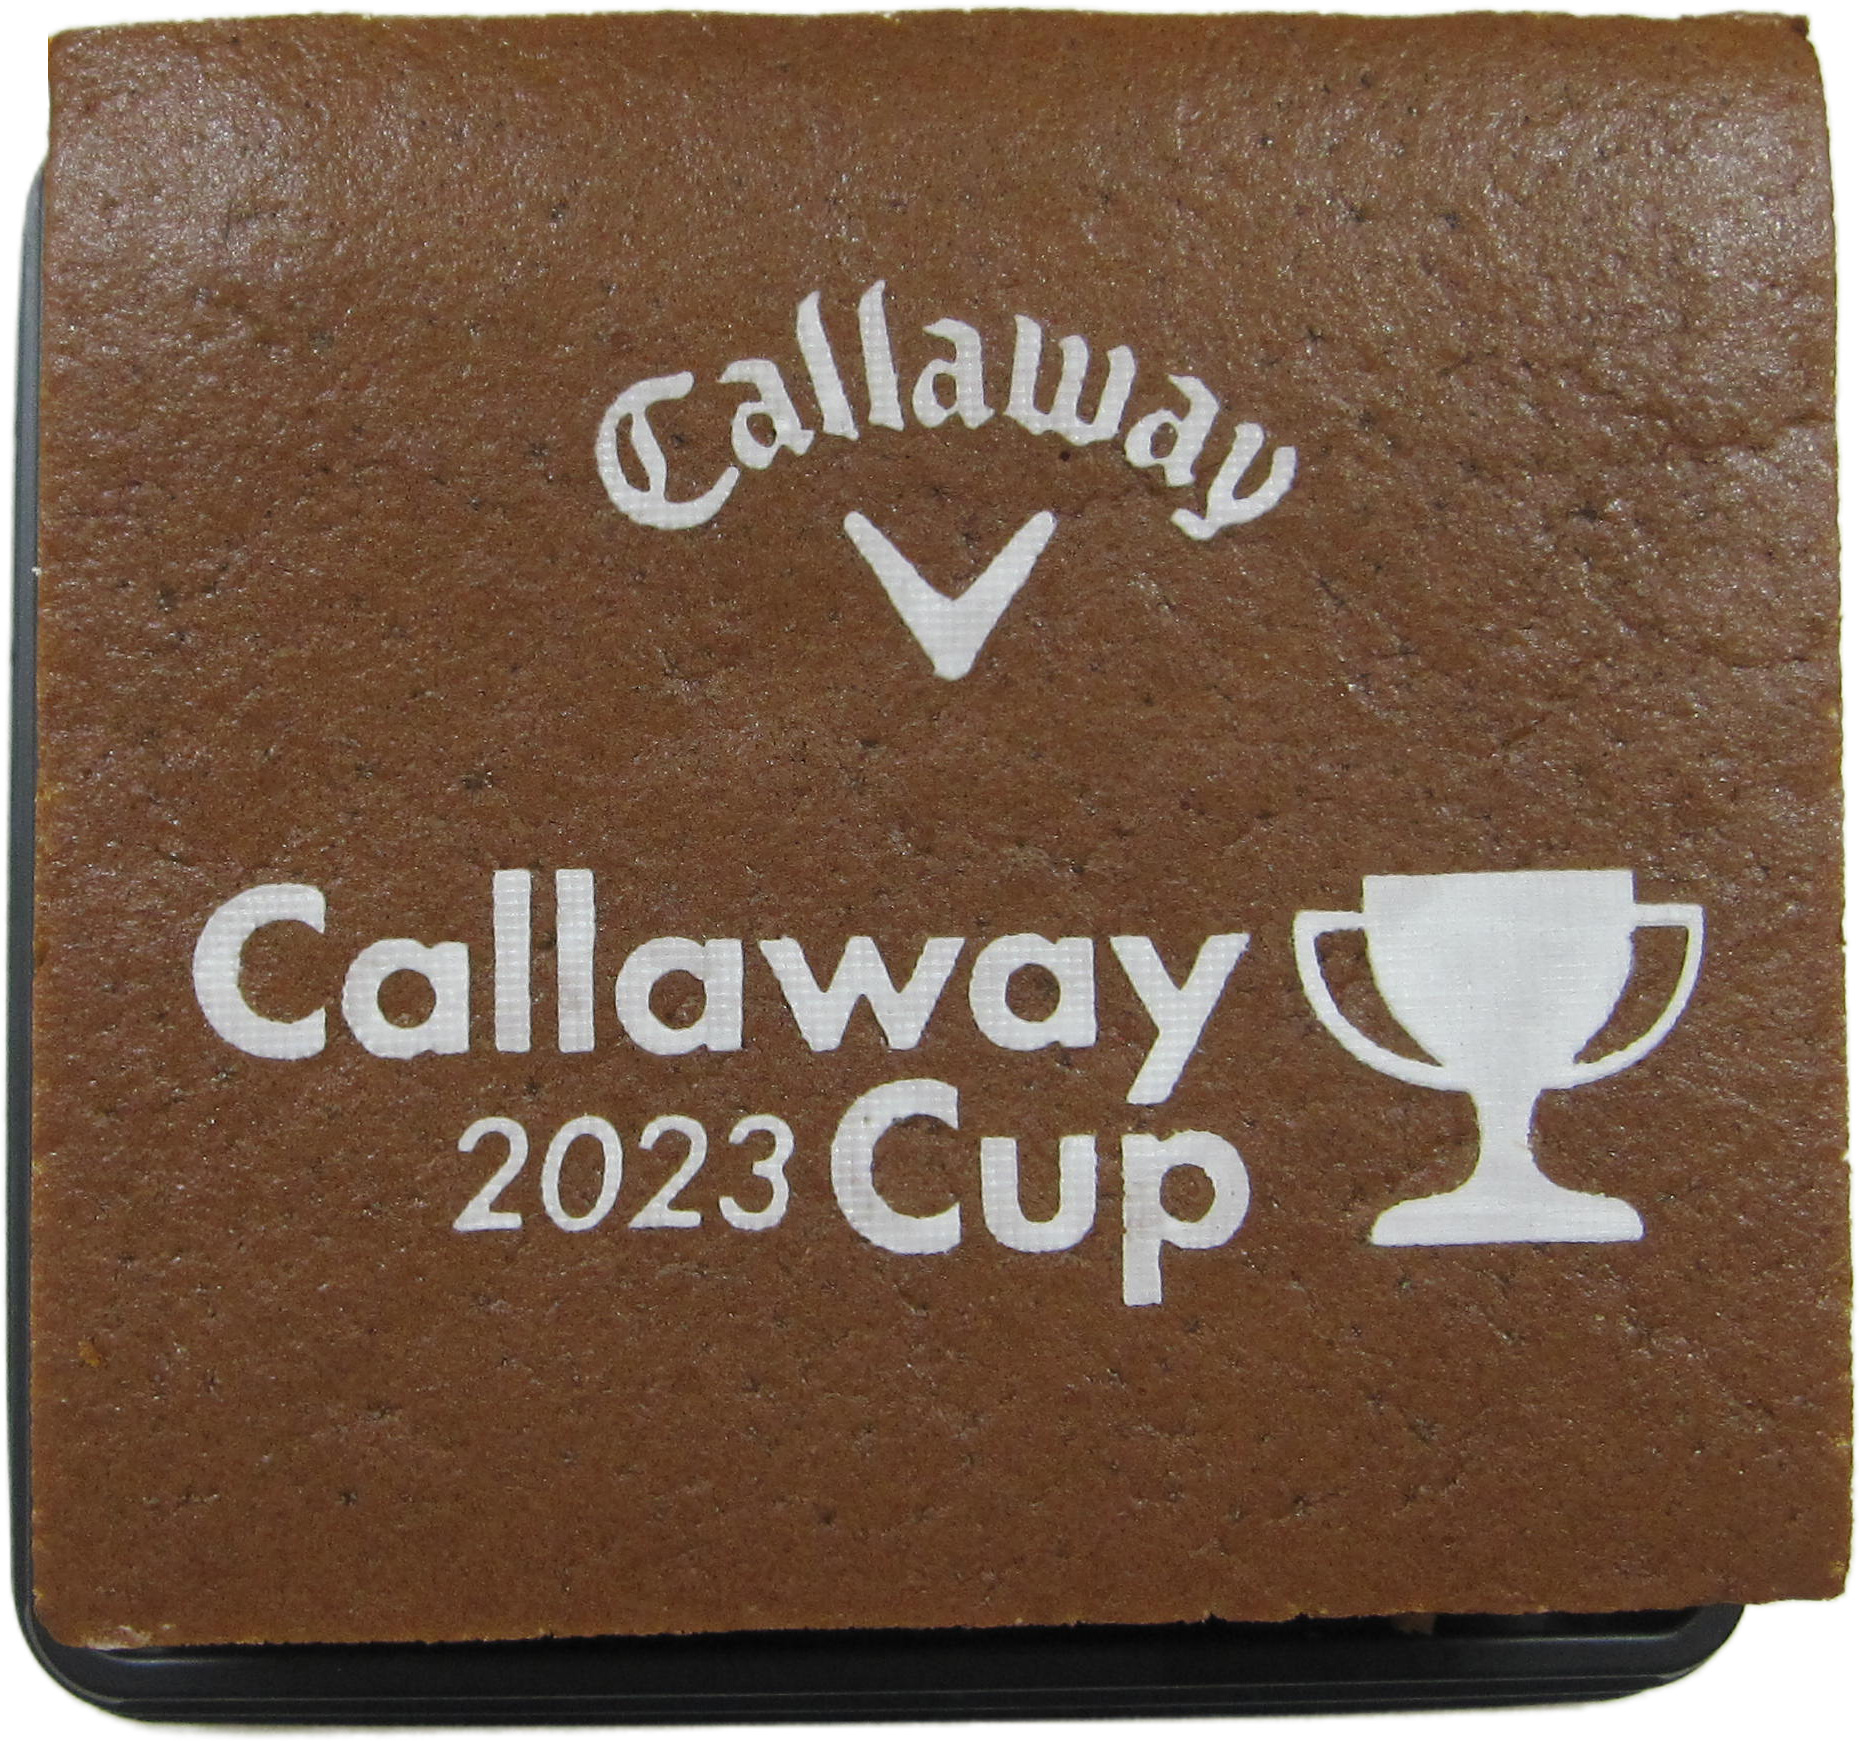 Callaway Cup 2023